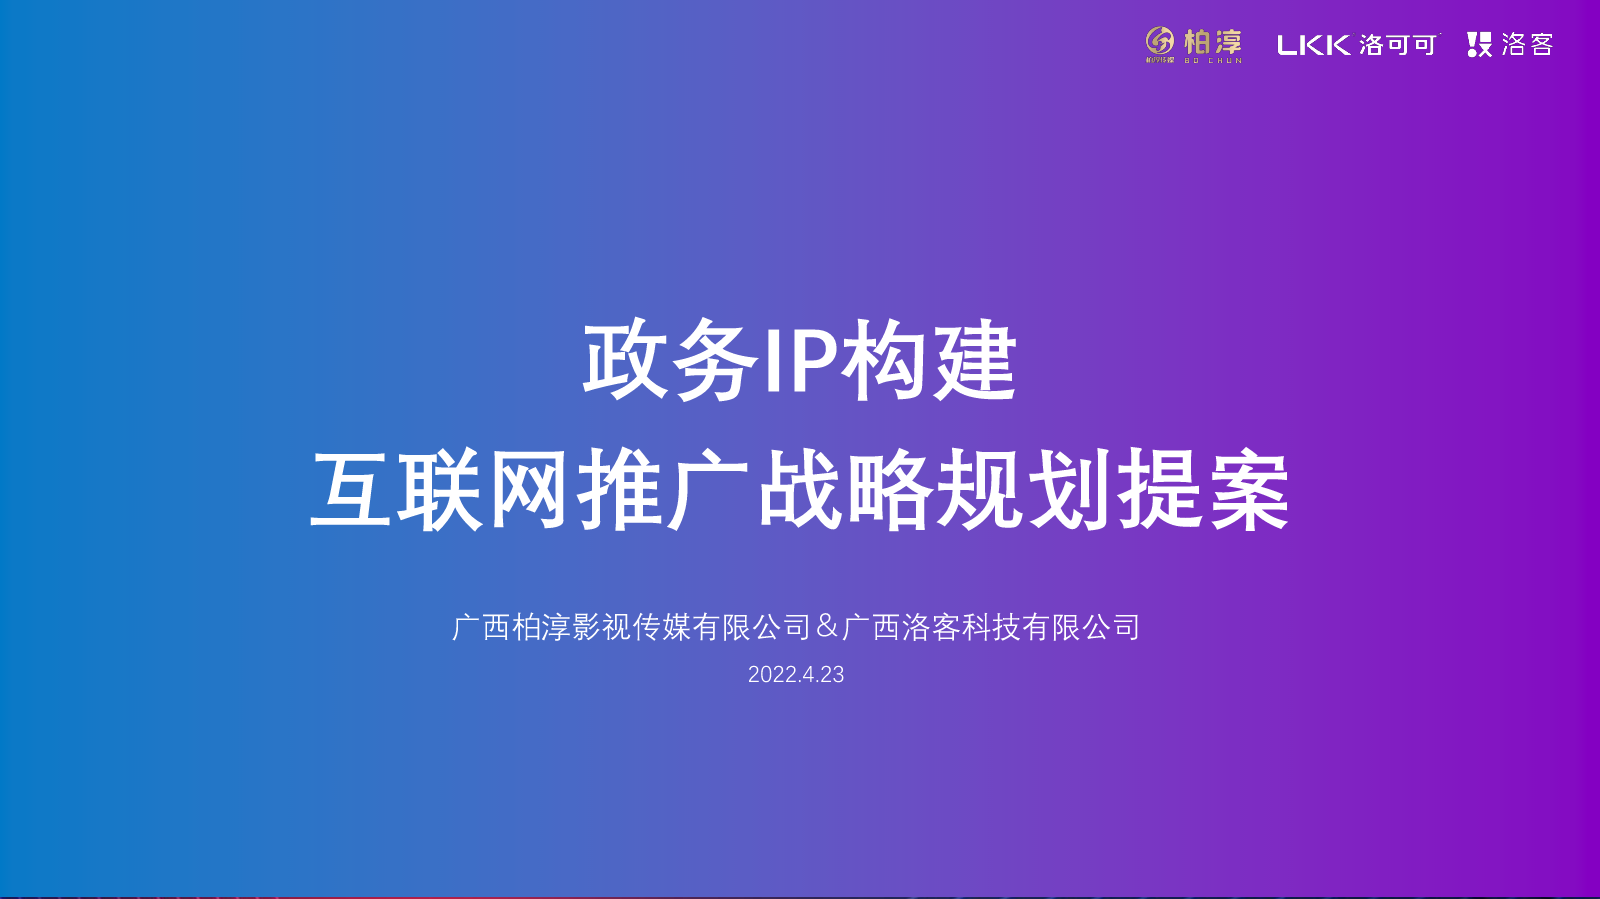 政务IP构建互联网战略规划提案-柏淳影视传媒＆广西洛客-2022.4.27